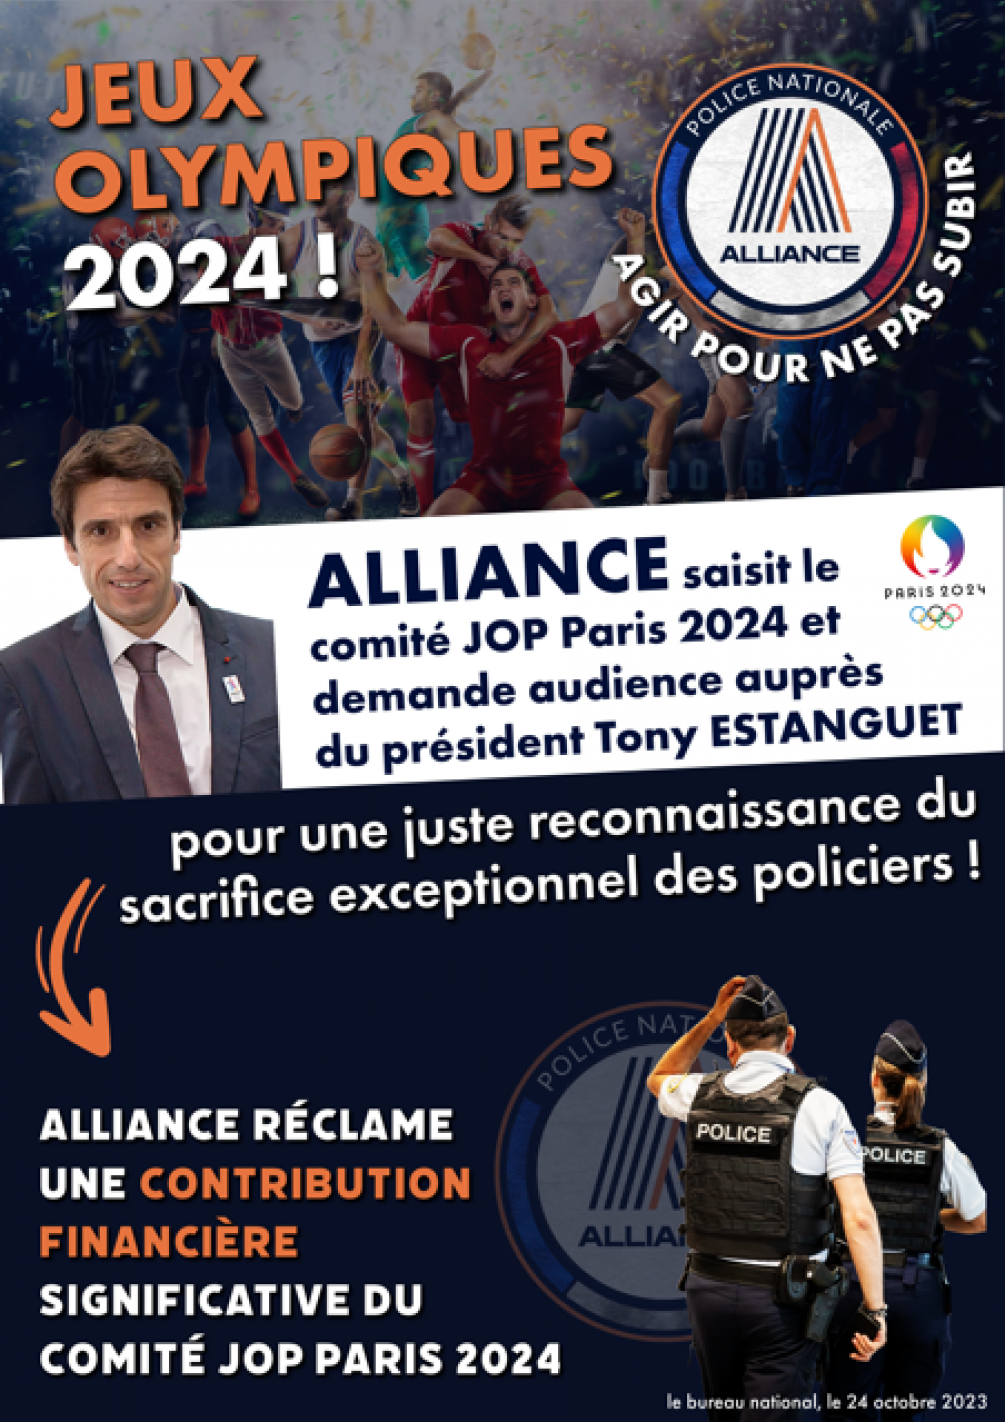 Jeux Olympiques : Alliance saisit le comité JOP 2024